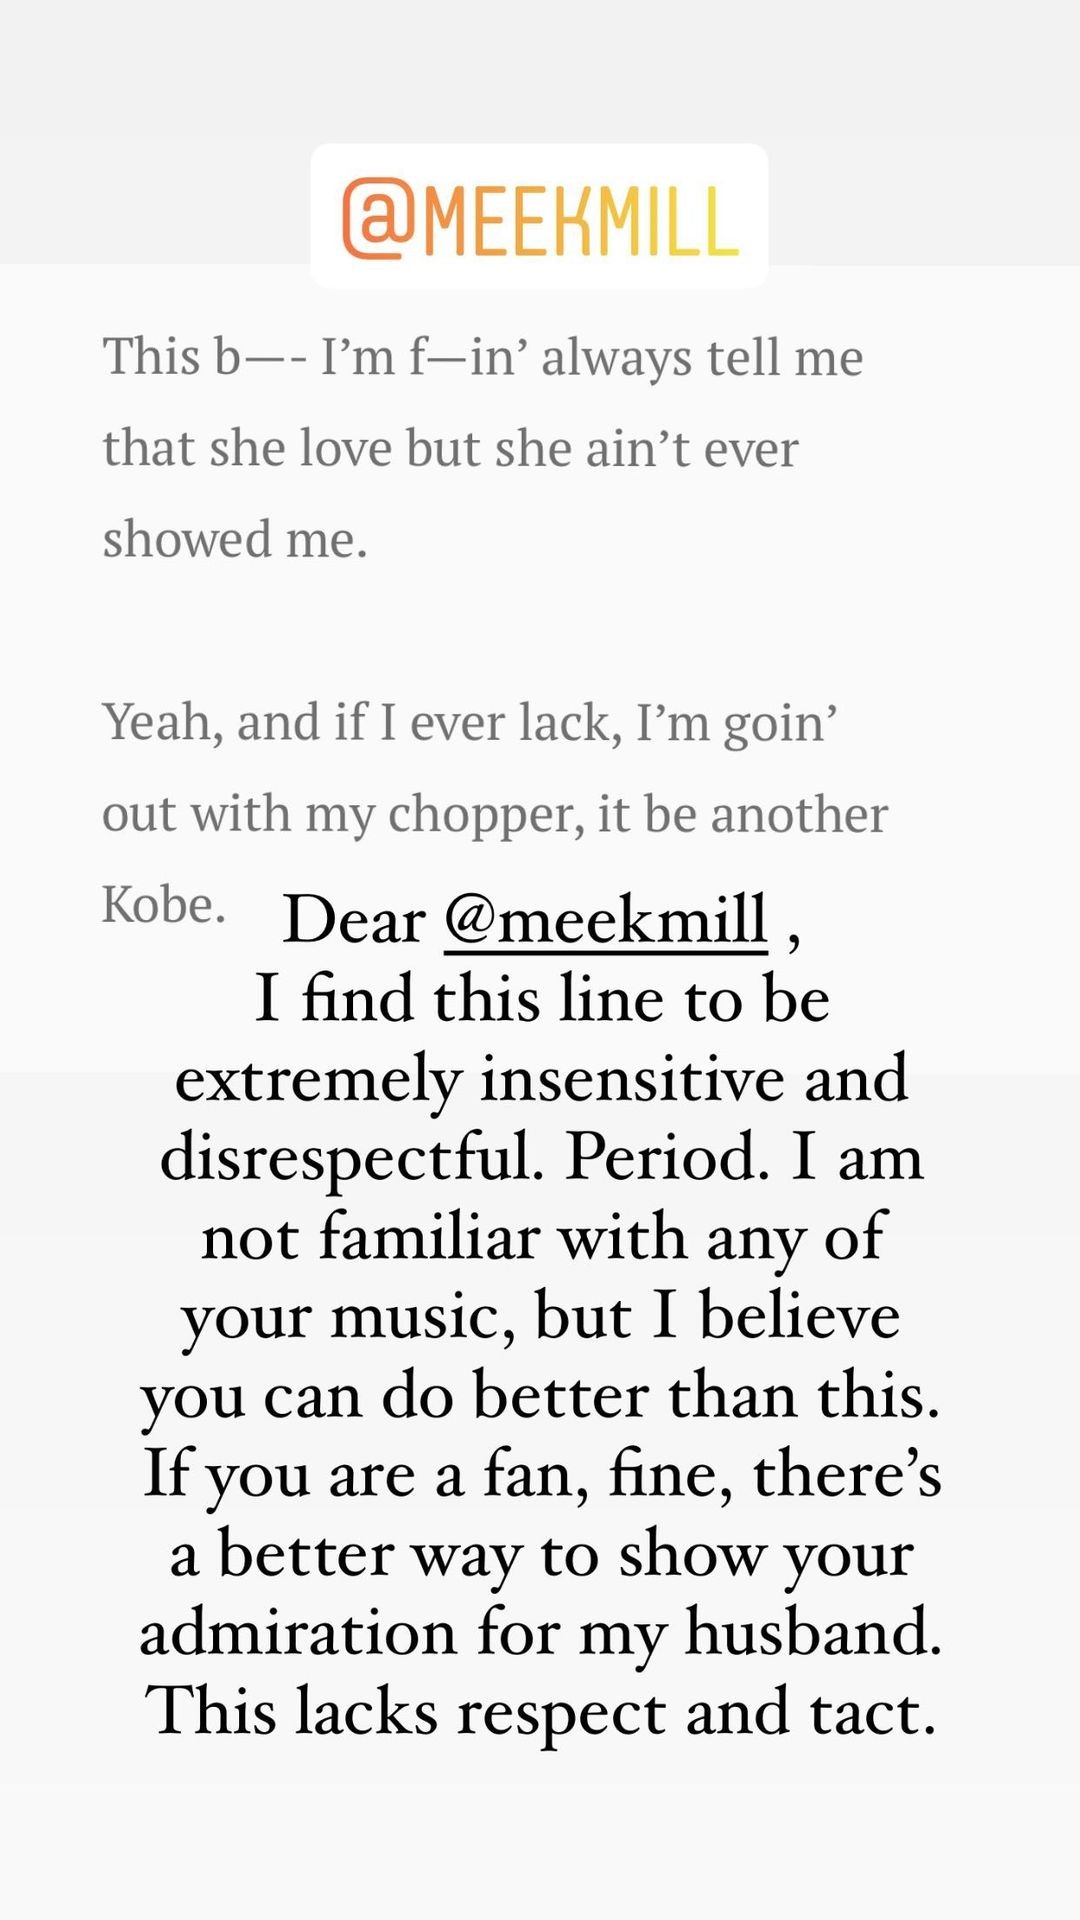 Vanessa Bryant, viúva de Kobe Bryant, se manifesta sobre música de Meek Mill que cita o saudoso marido (Foto: Reprodução/Instagram)